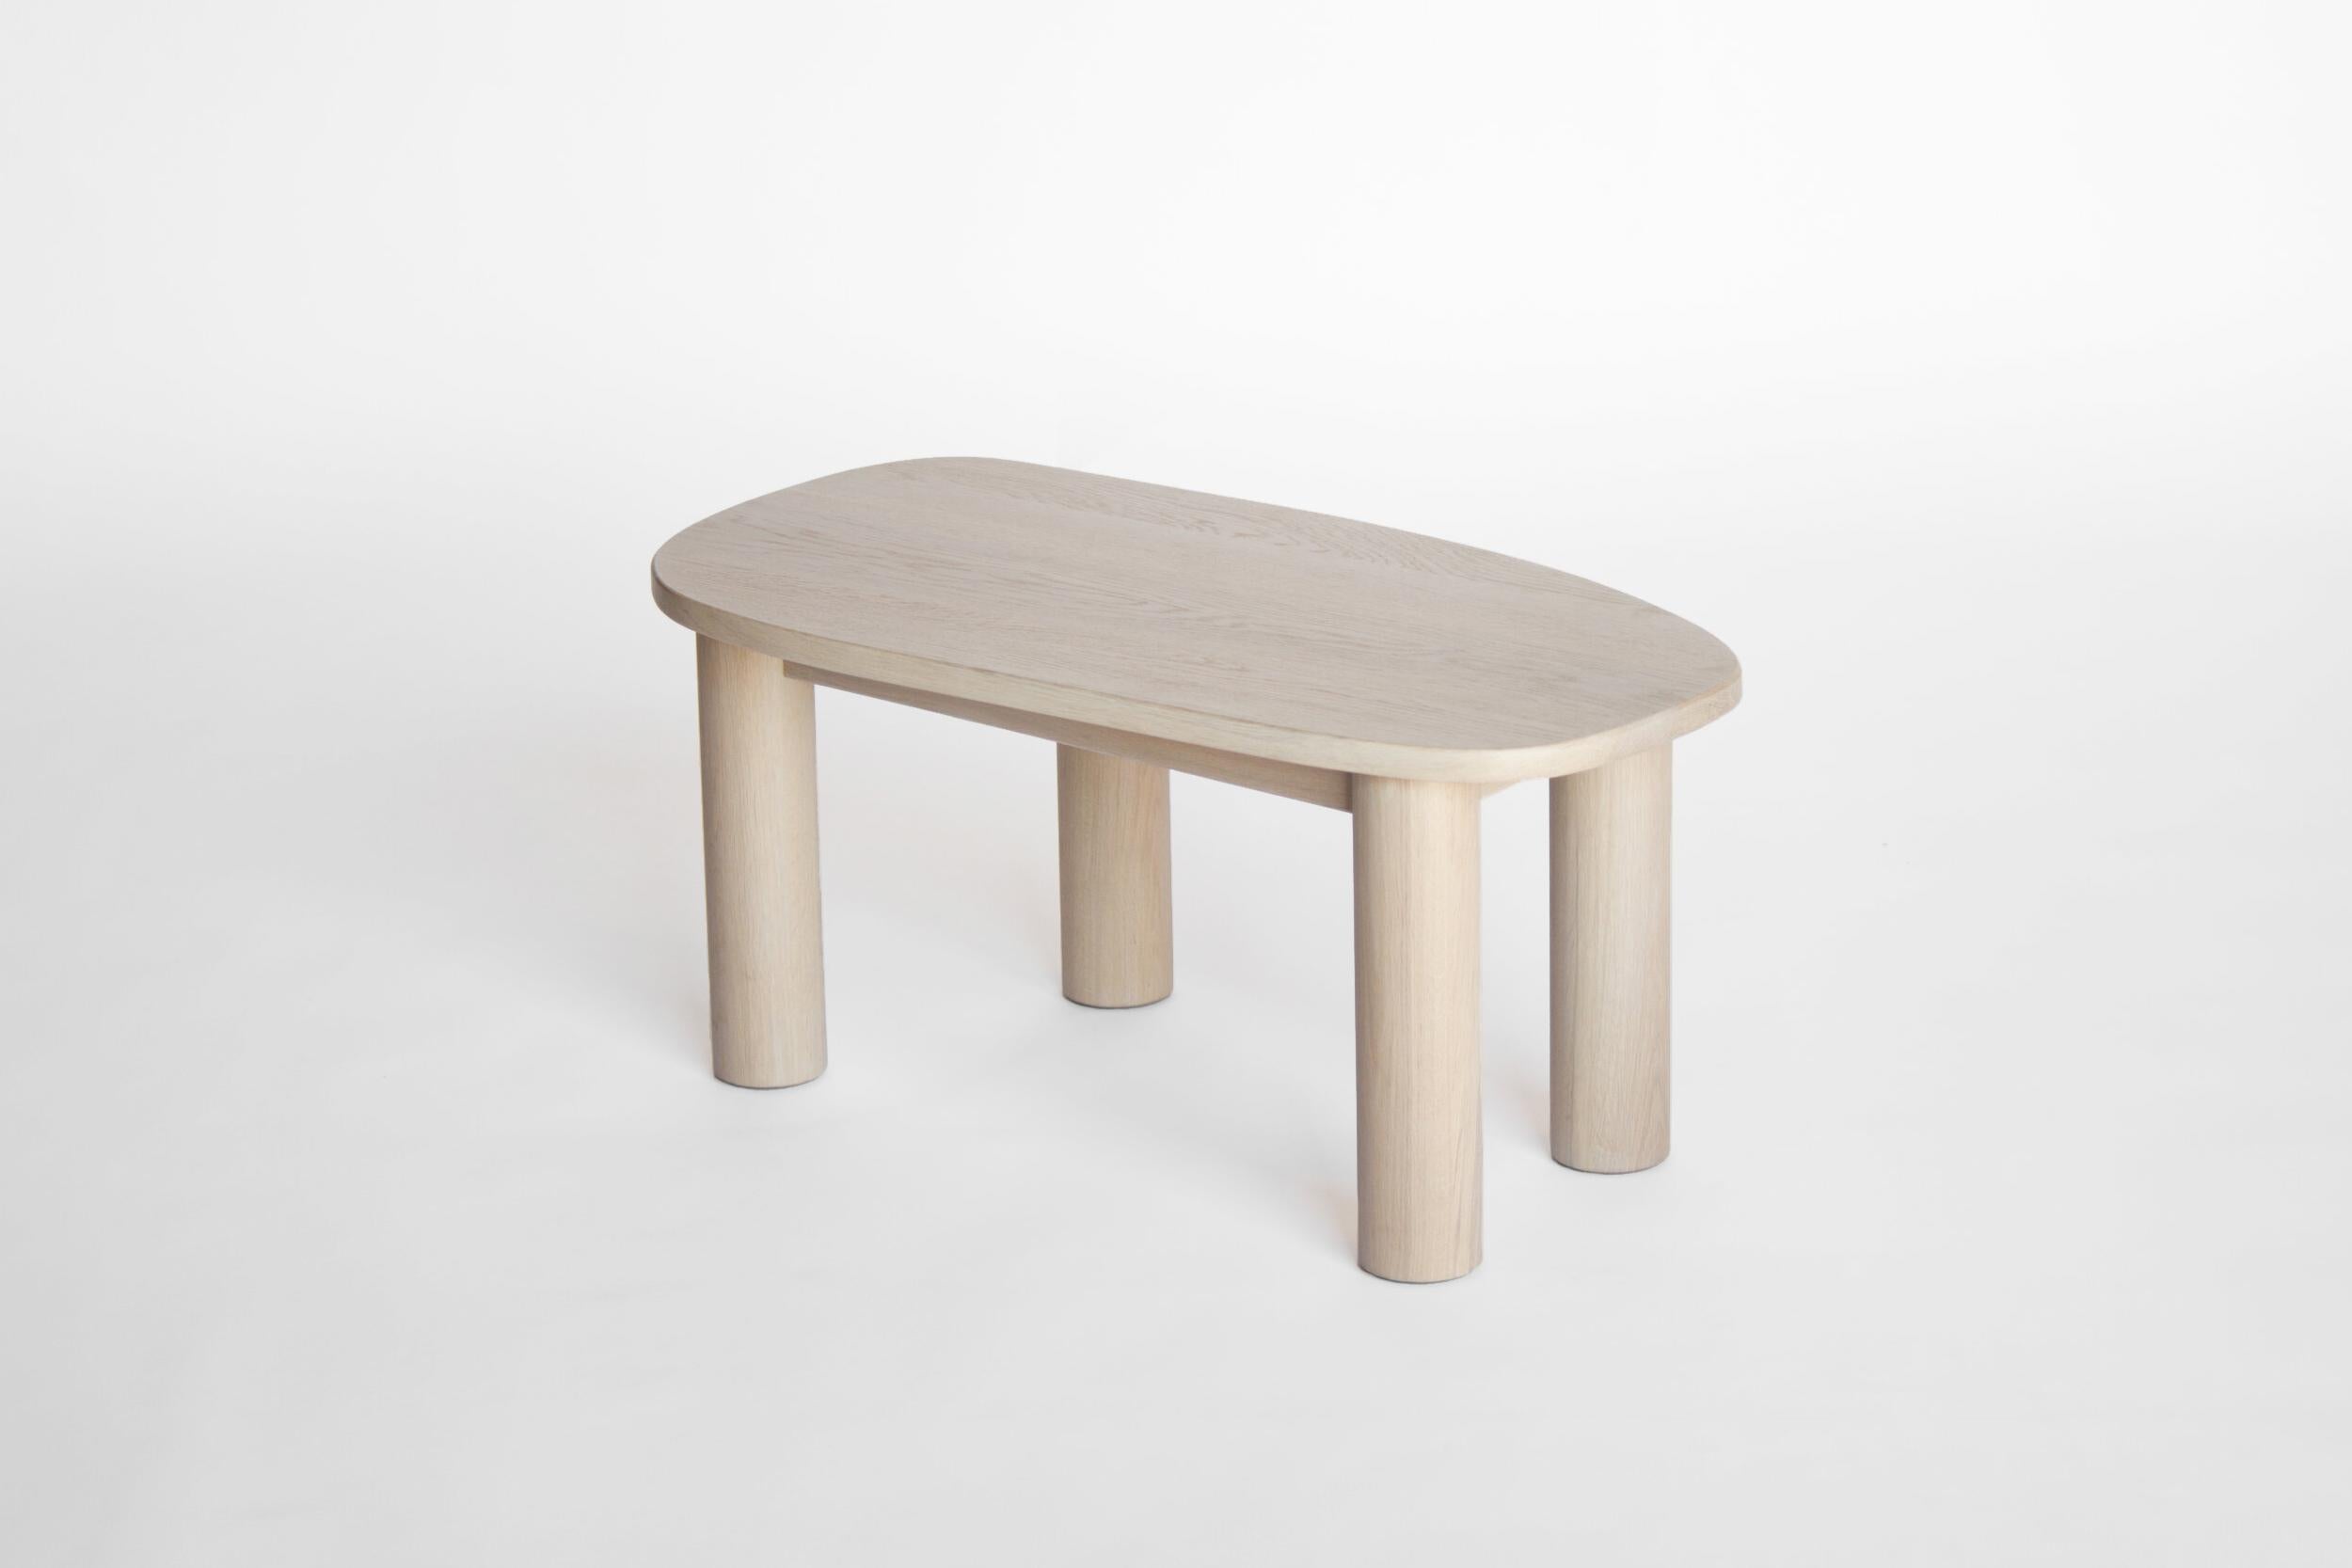 Sun at Six est un studio de conception de mobilier contemporain qui travaille avec des maîtres menuisiers chinois traditionnels pour fabriquer ses pièces à la main en utilisant la menuiserie traditionnelle. Notre table basse Classic est simple,